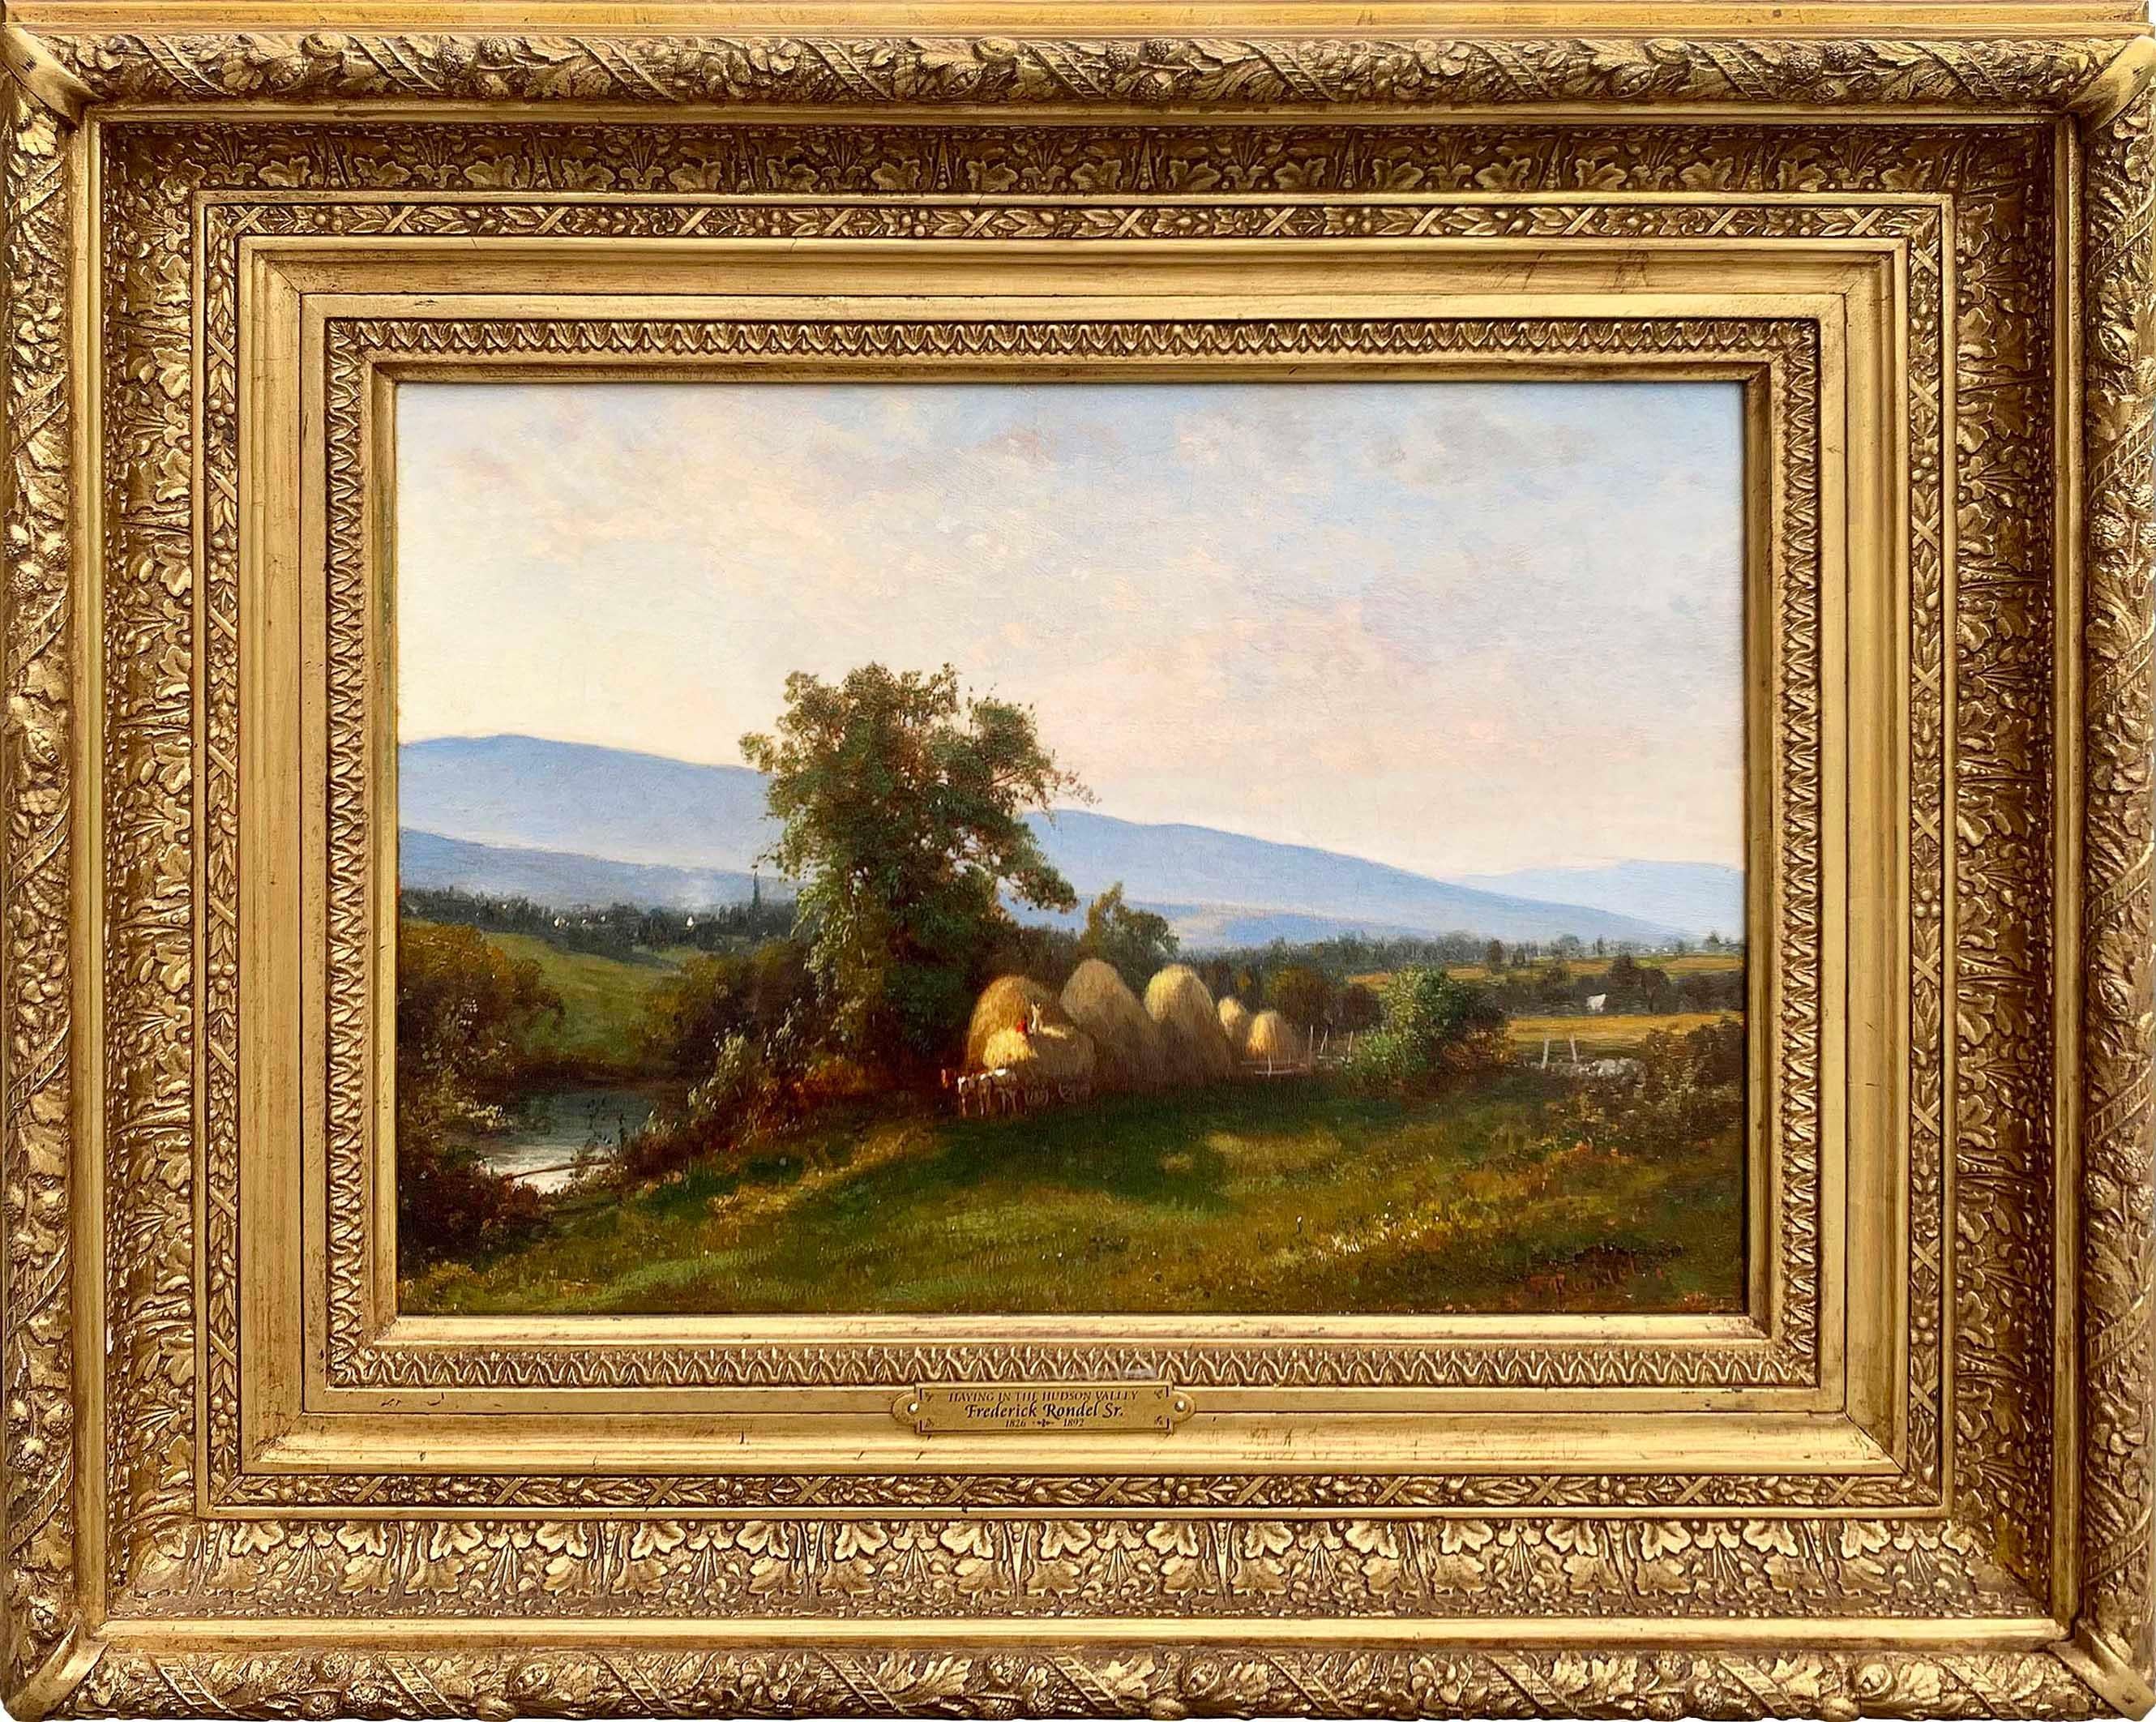 Gemalt von Hudson River School Künstler Frederick Rondel, Sr. (1826-1892), "Haying in the Hudson River Valley" ist Öl auf Leinwand, misst 10,25 x 14 Zoll, und ist von Rondel auf der unteren rechten Seite unterzeichnet. Das Werk ist in einem